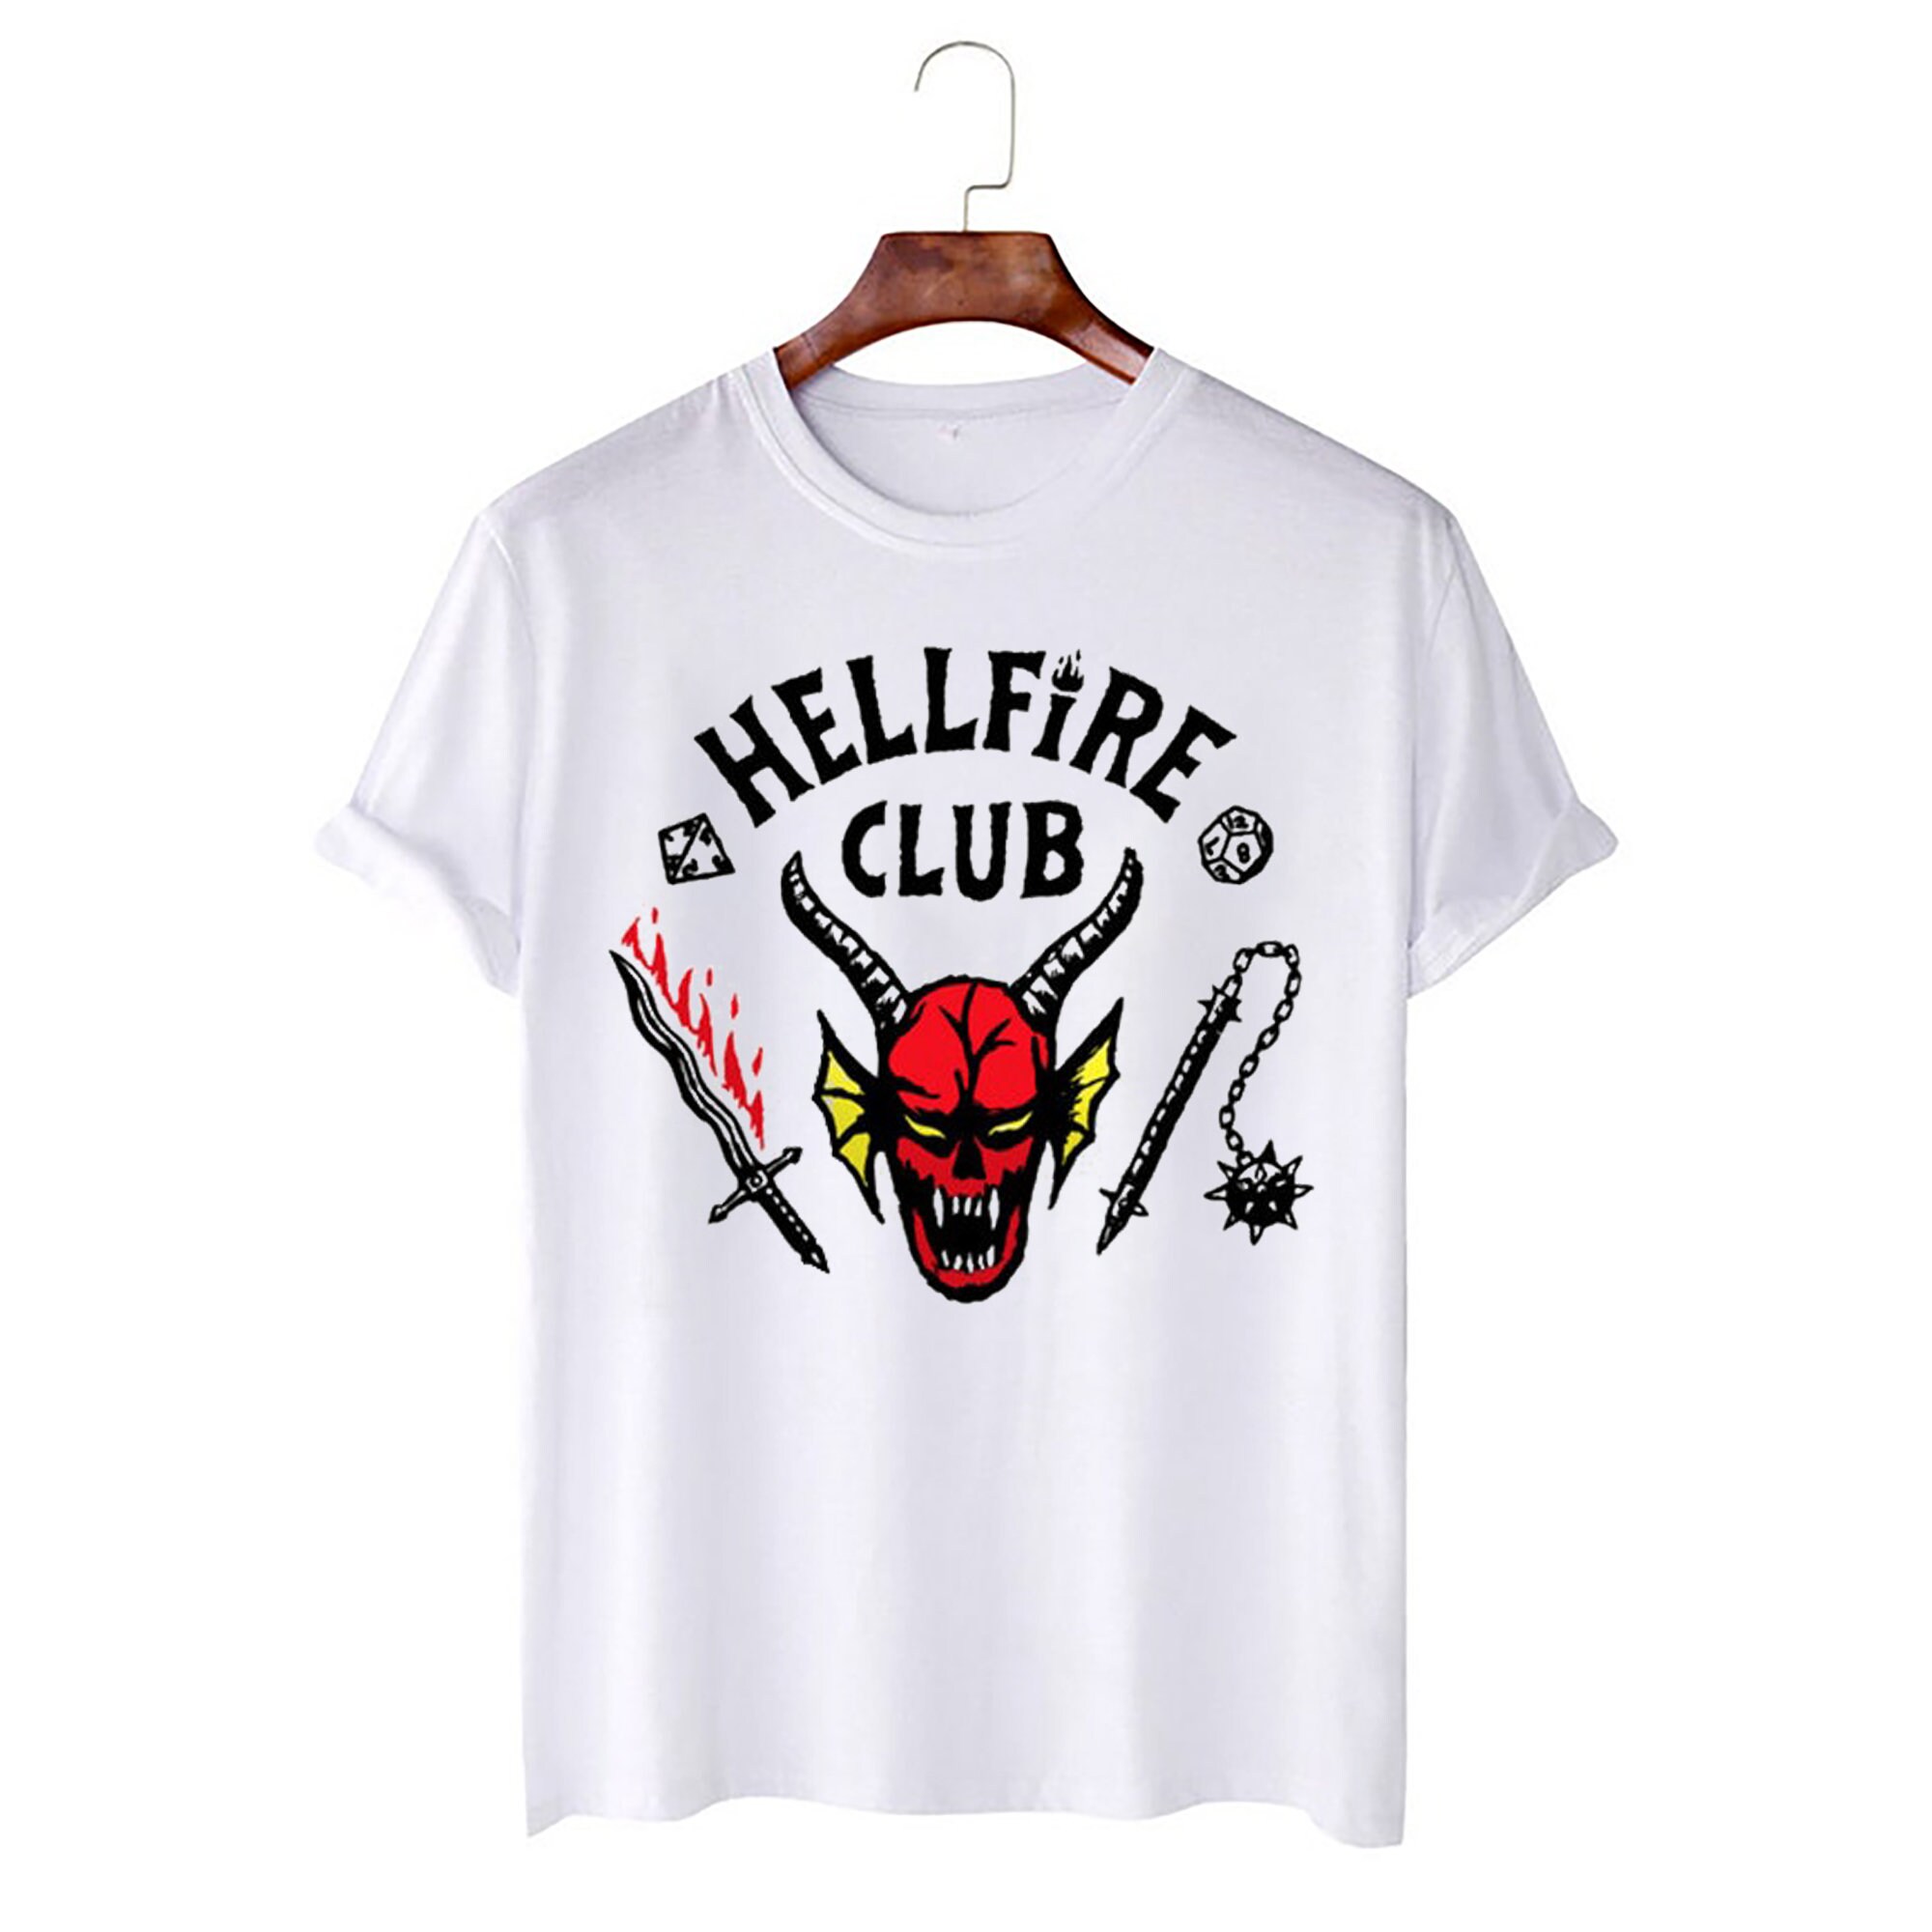 4 Hellfire Club Stranger Things New Seasson Unisex T-Shirt